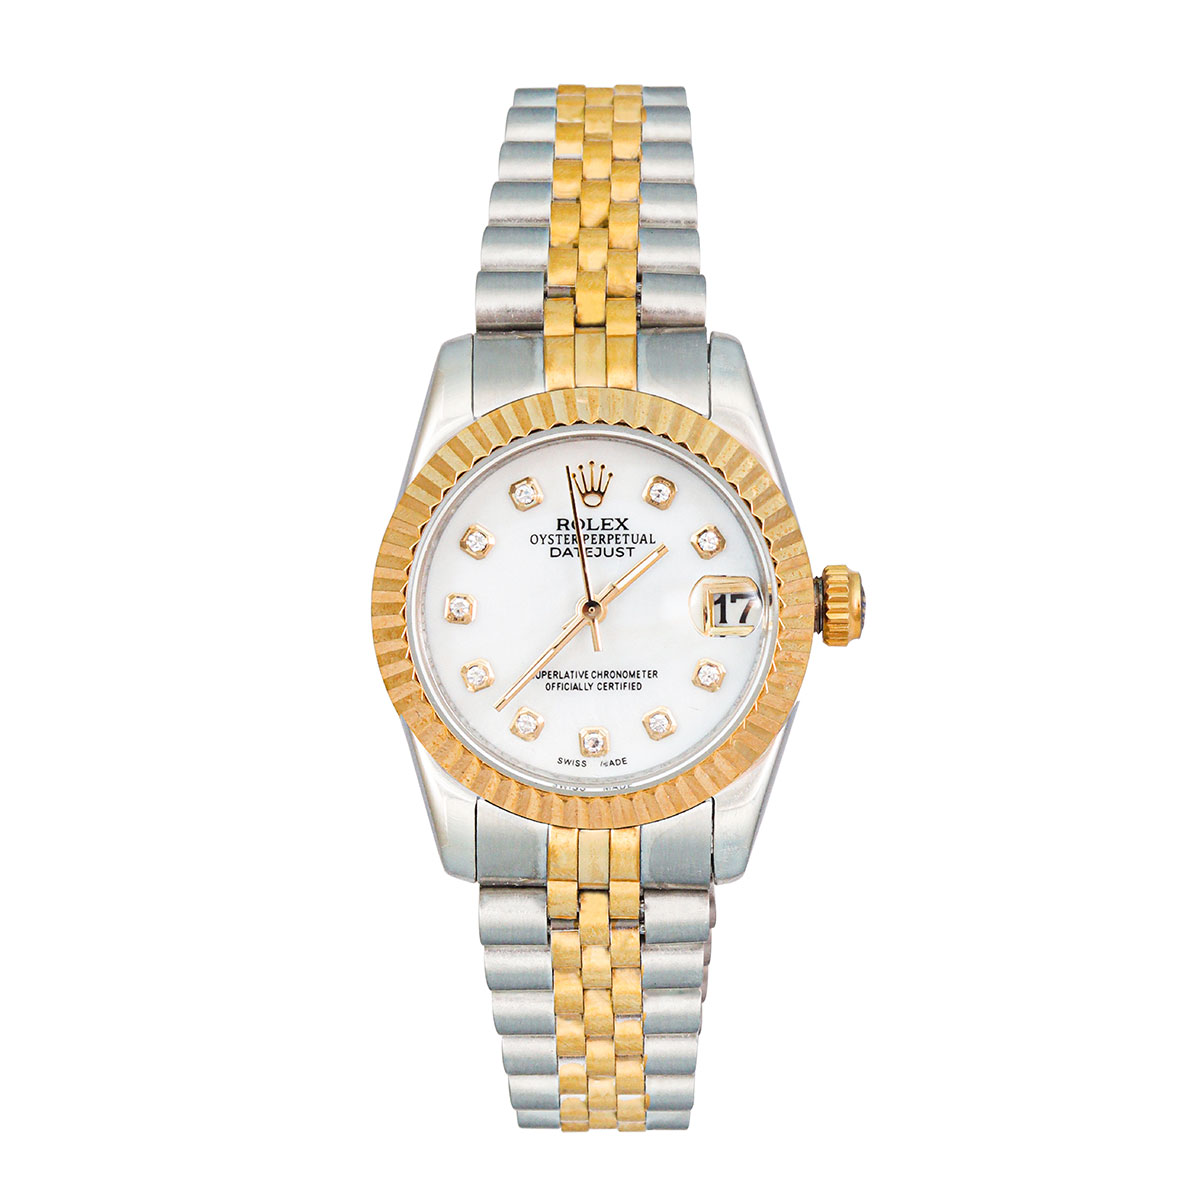 ساعت رولکس دیت جاست زنانه - انواع ساعت رولکس زنانه با بهترین قیمت - فروشگاه دیجی رود